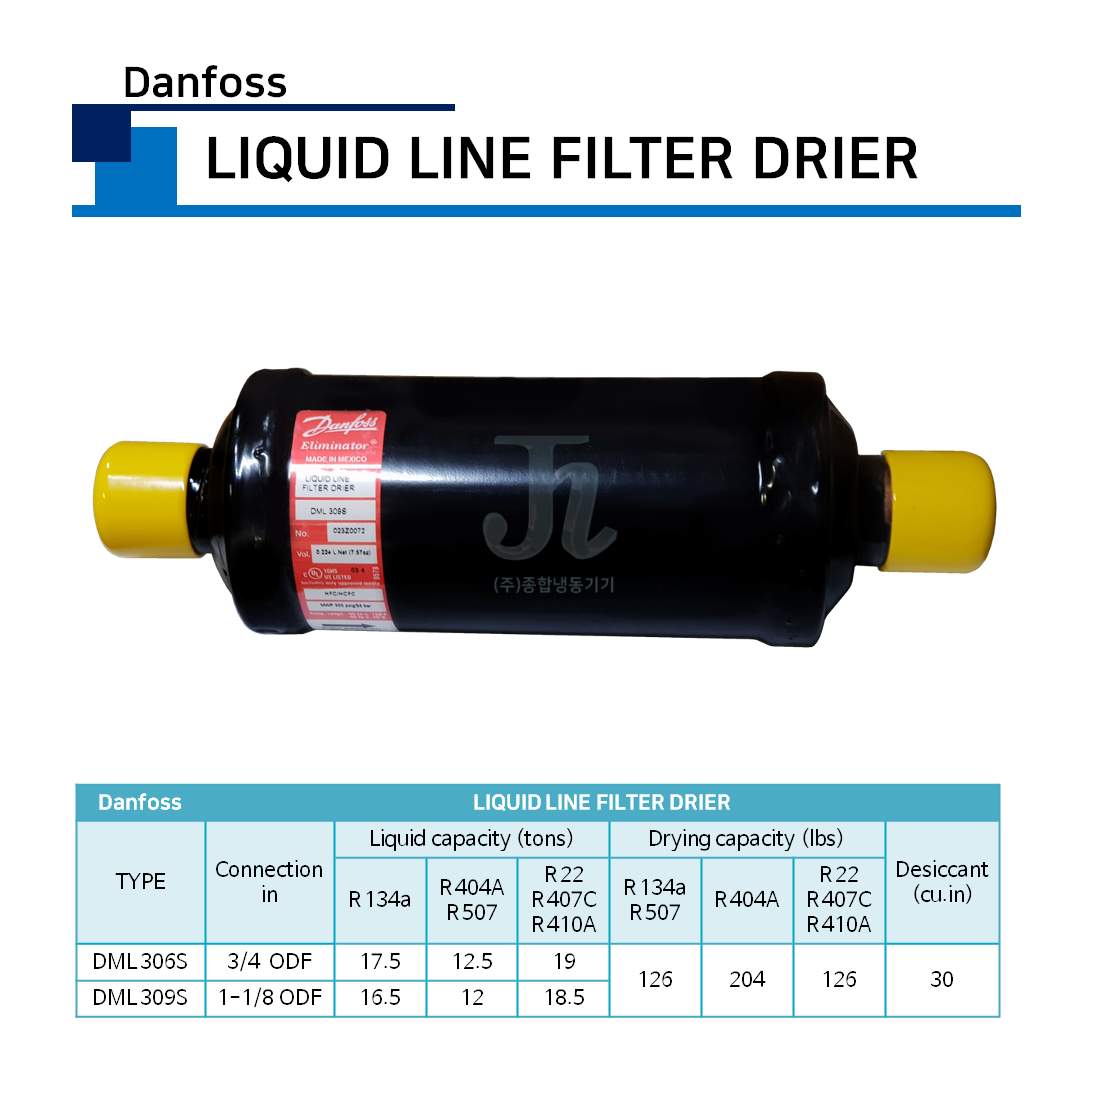 Danfoss - Liquid Line Filter Drier